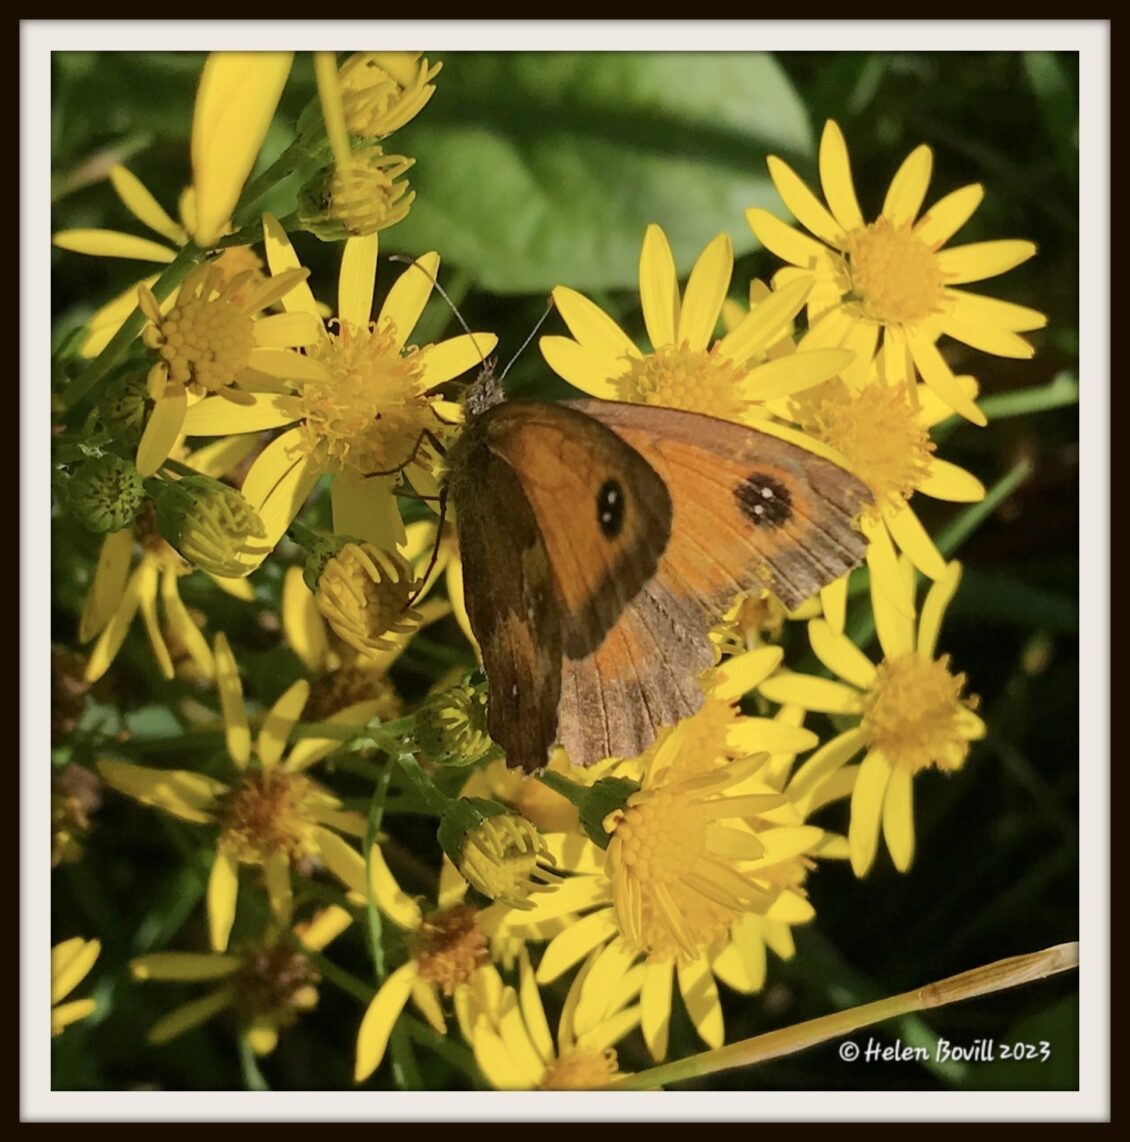 A Gatekeeper Butterfly on Ragwort